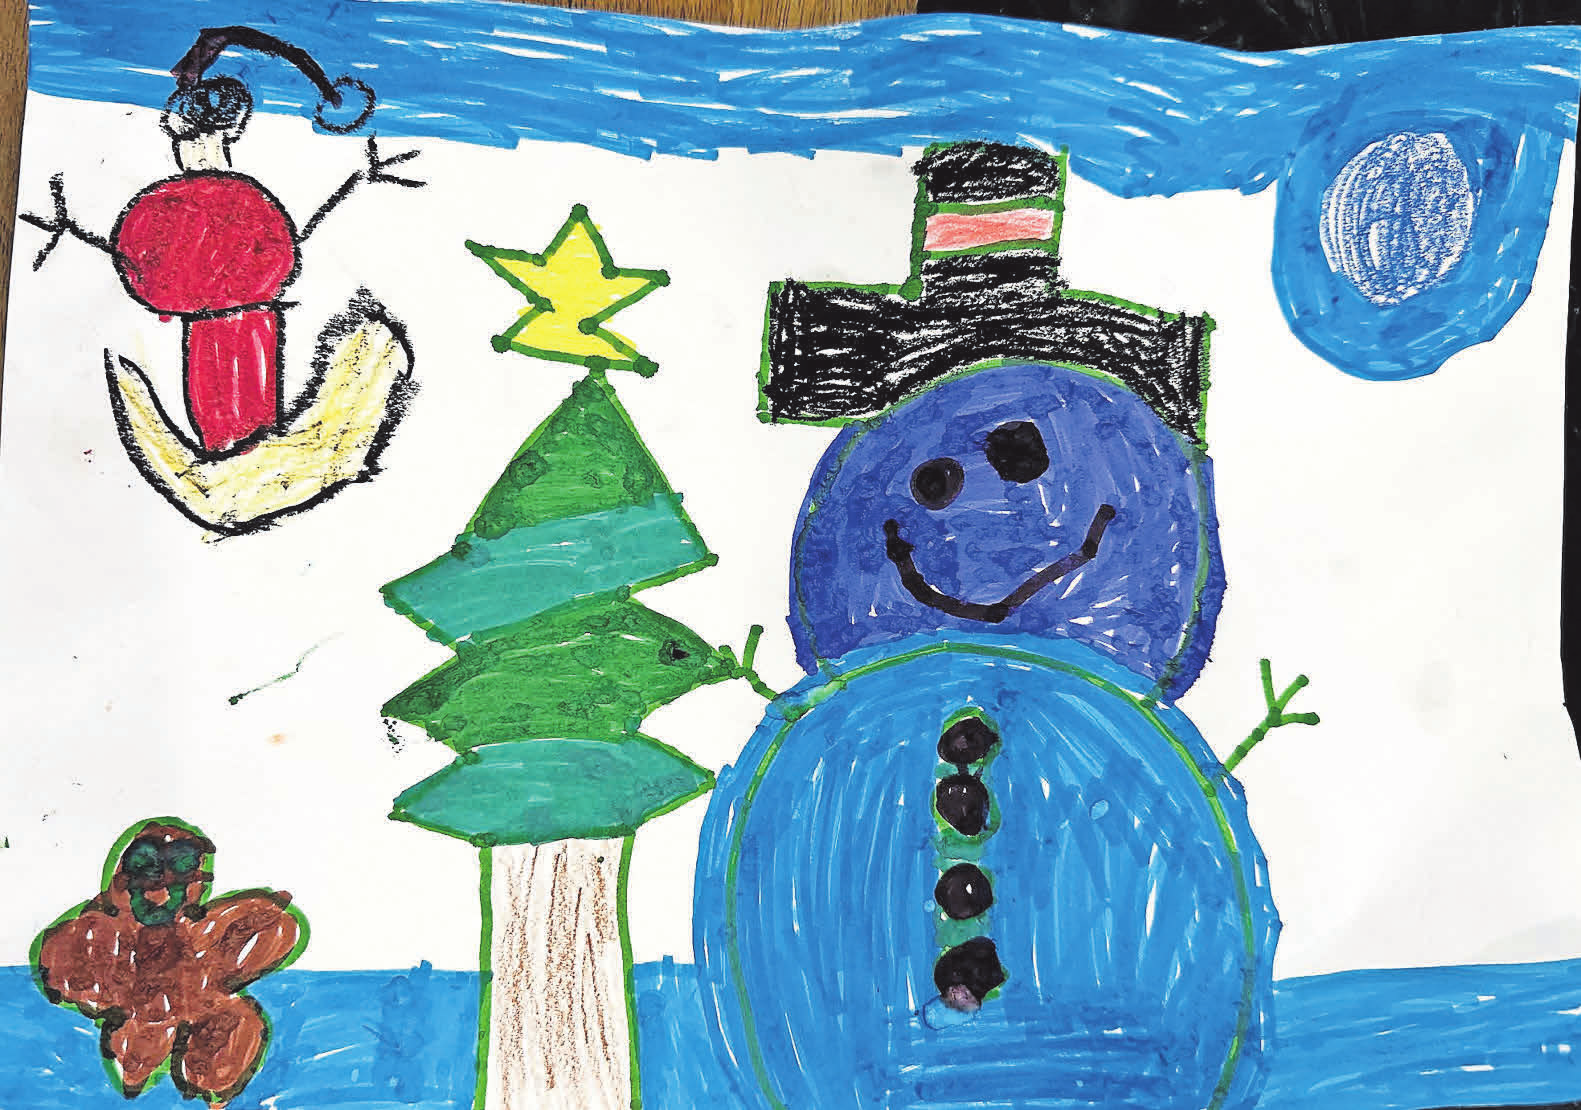 Eine Einsendung von Sinem Topcu: An Weihnachten denke ich immer an Schnee, den Weihnachtsmann mit seinem Schlitten, an einen schönen Weihnachtsbaum und leckere Lebkuchenkekse. Das ist mein Perfekter Weihnachtstag.